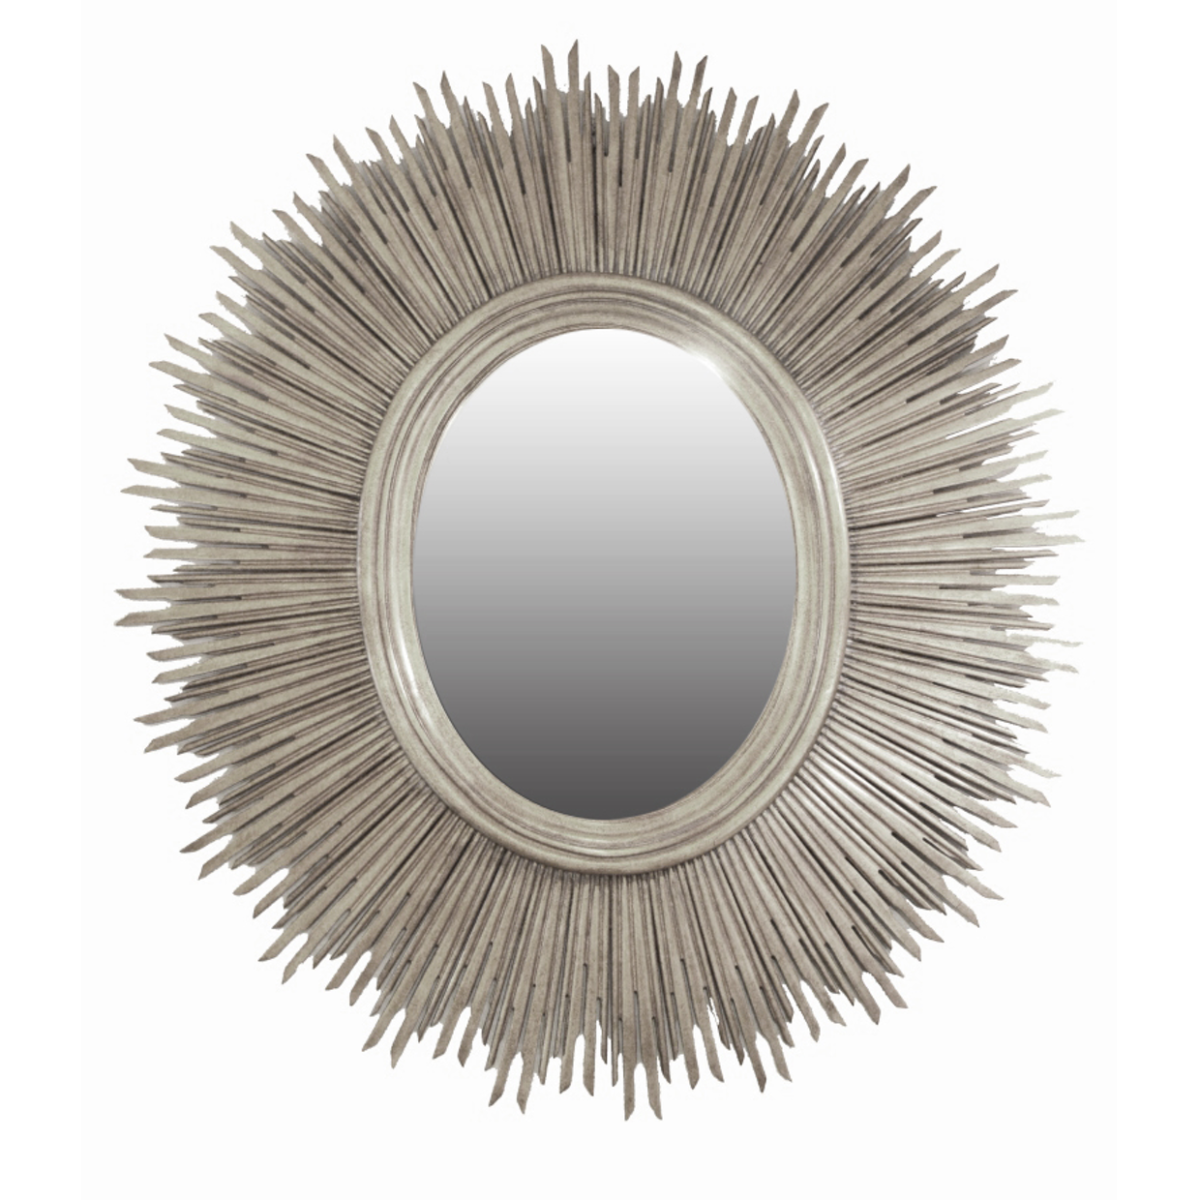 Sunstruck mirror silver